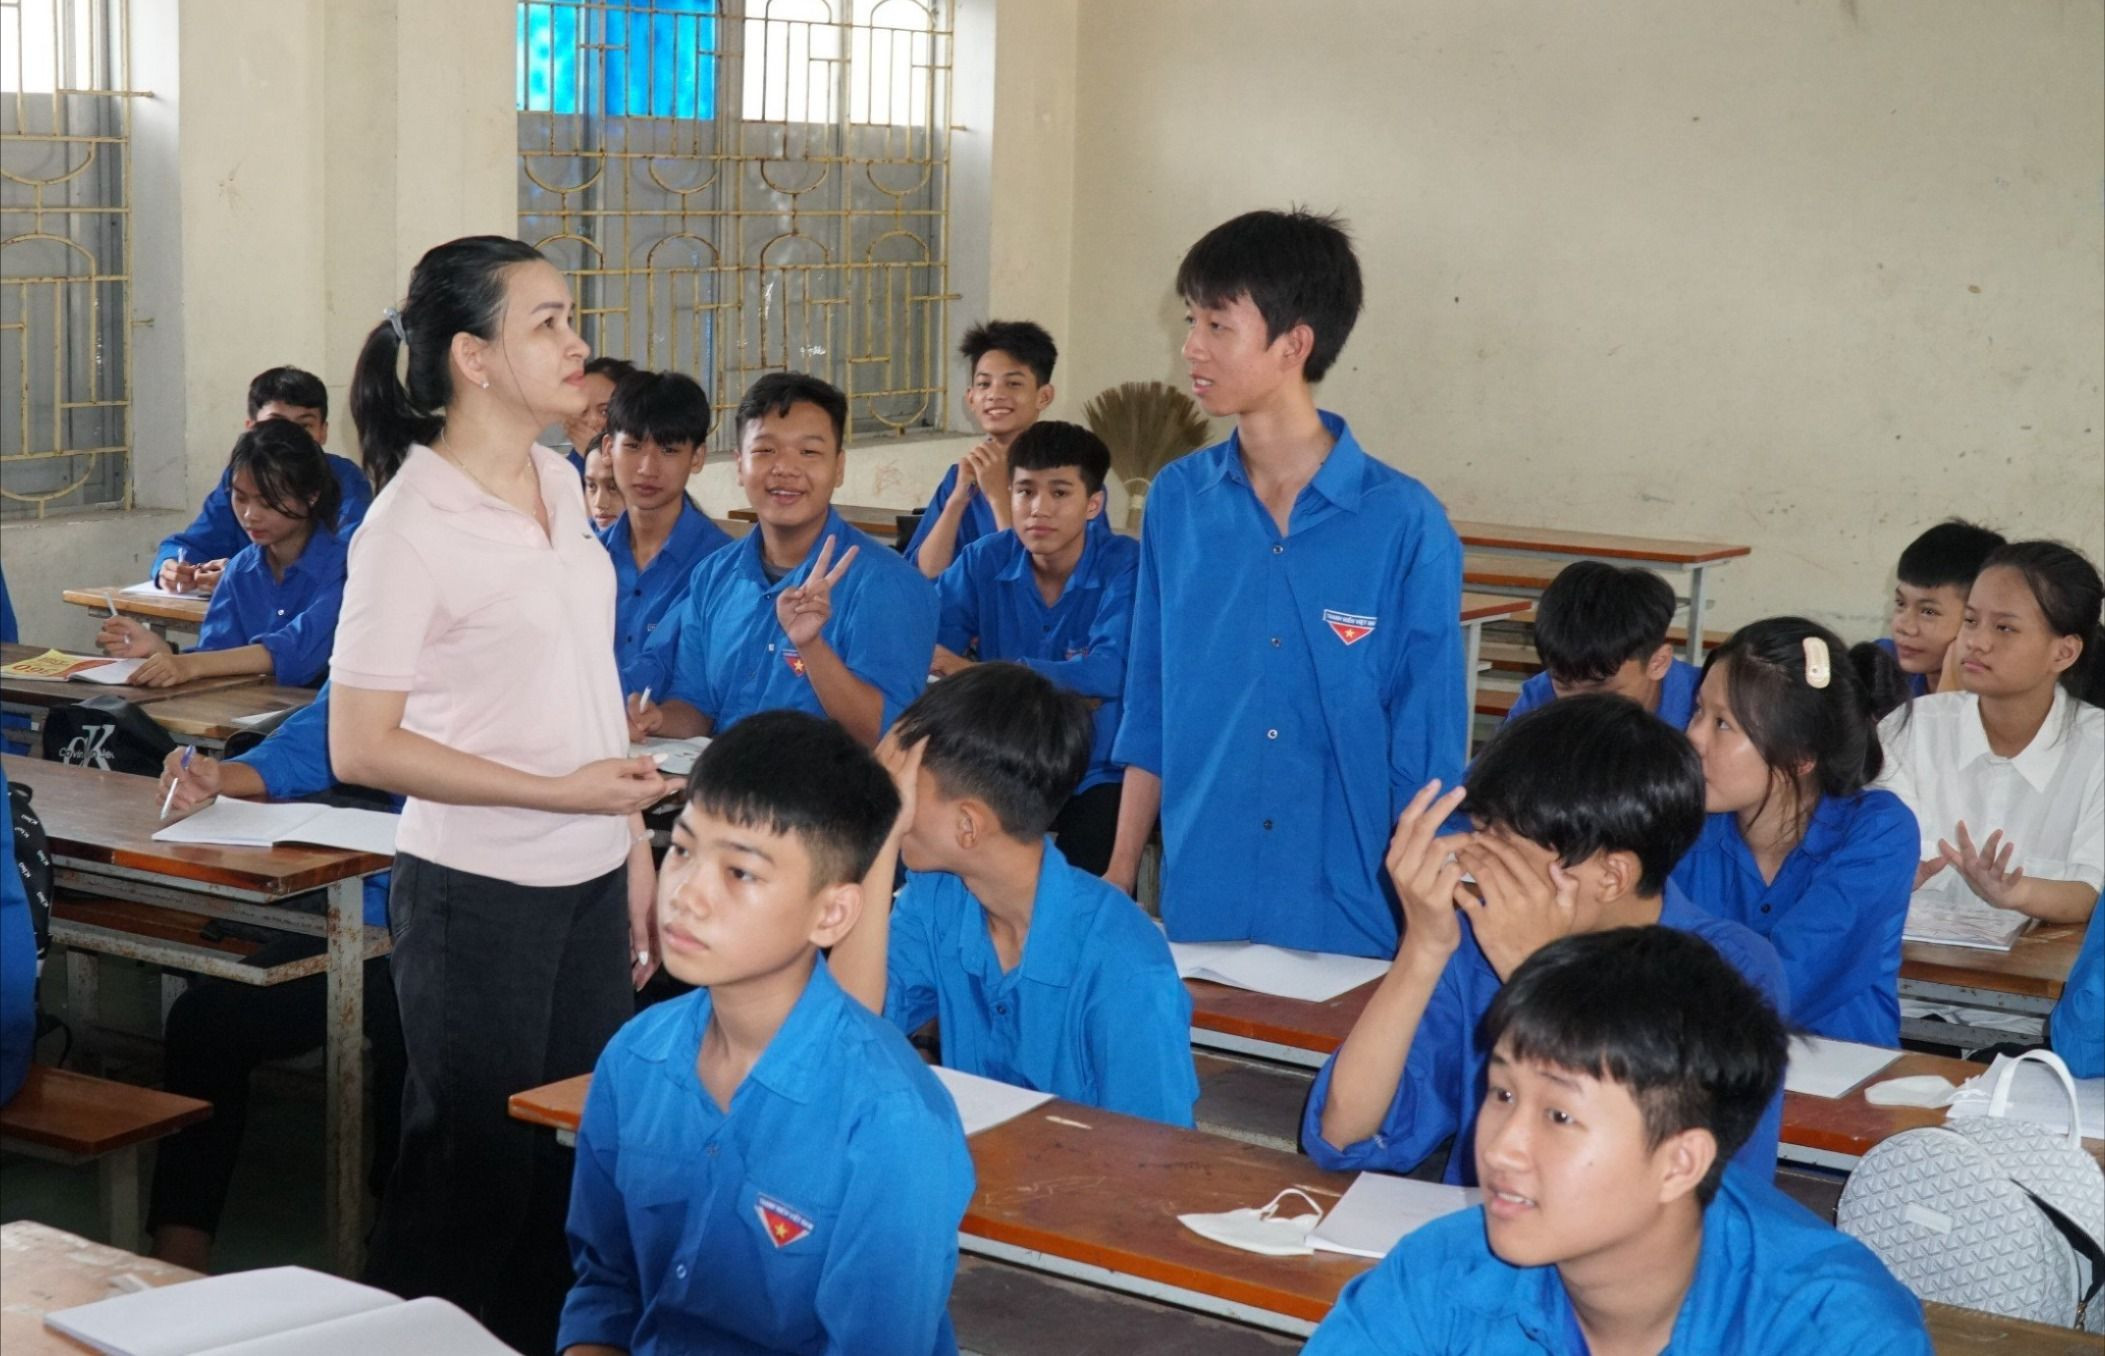 Một buổi học của các tân học sinh trường Trung cấp Kinh tế - Kỹ thuật Hồng Lam.jpg